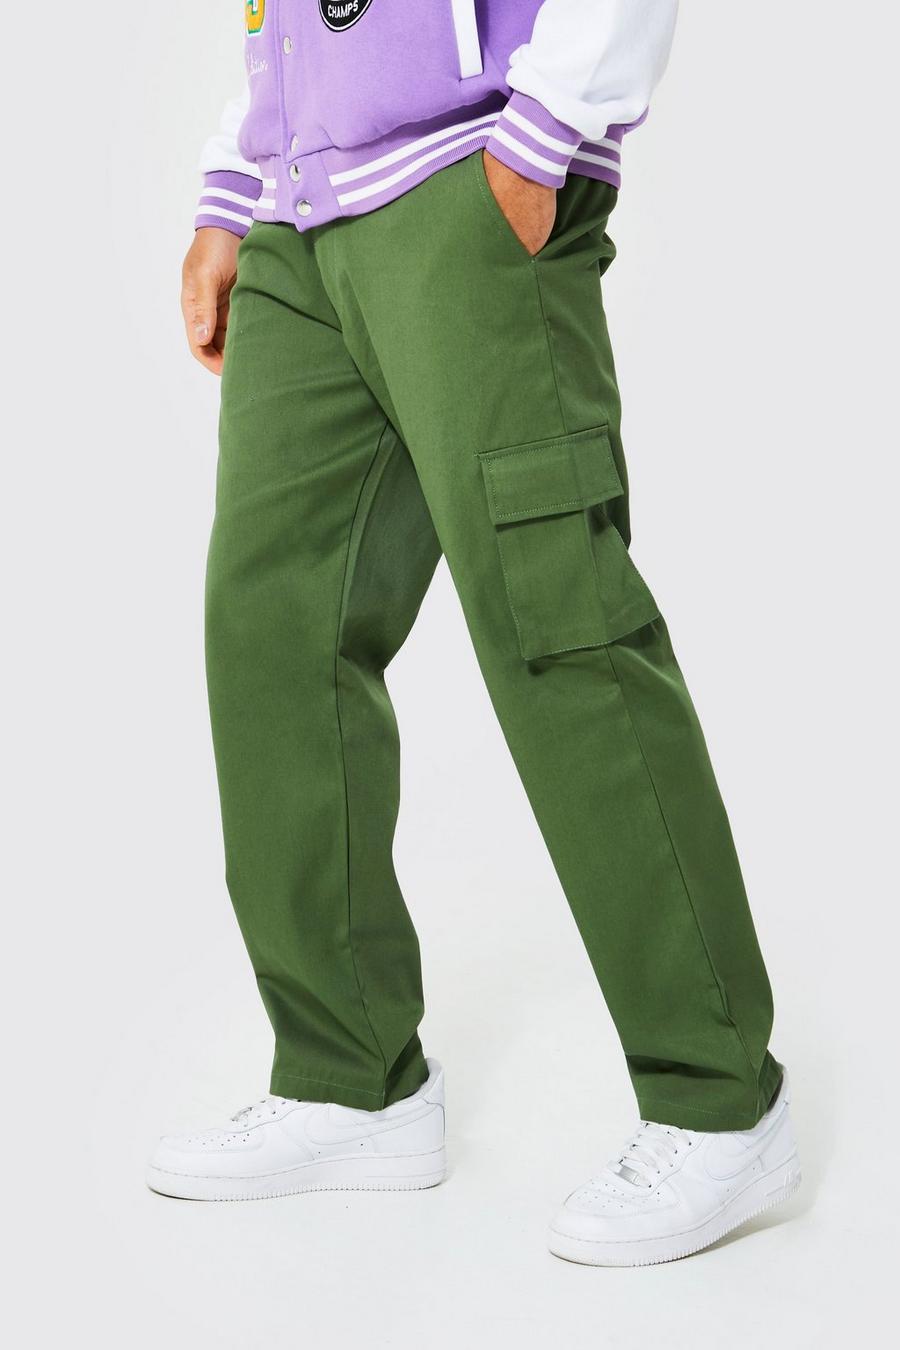 Pantaloni Chino stile Cargo rilassati, Khaki kaki